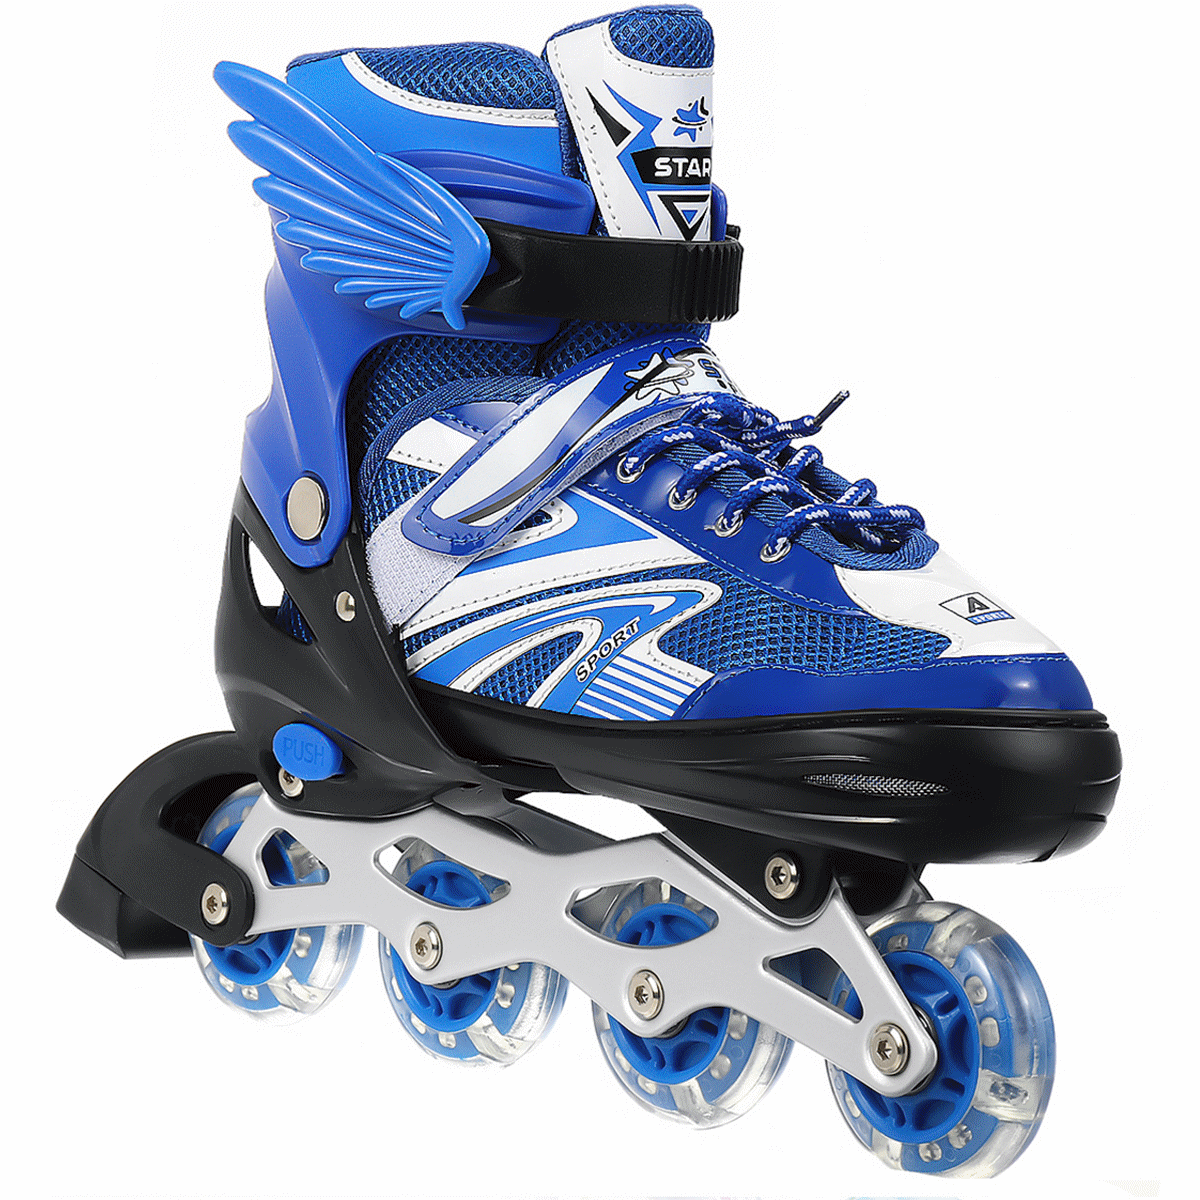 Boys & Girls Roller Skating Kids adult adjustable 4 Flash Wheels Skates Shoes 